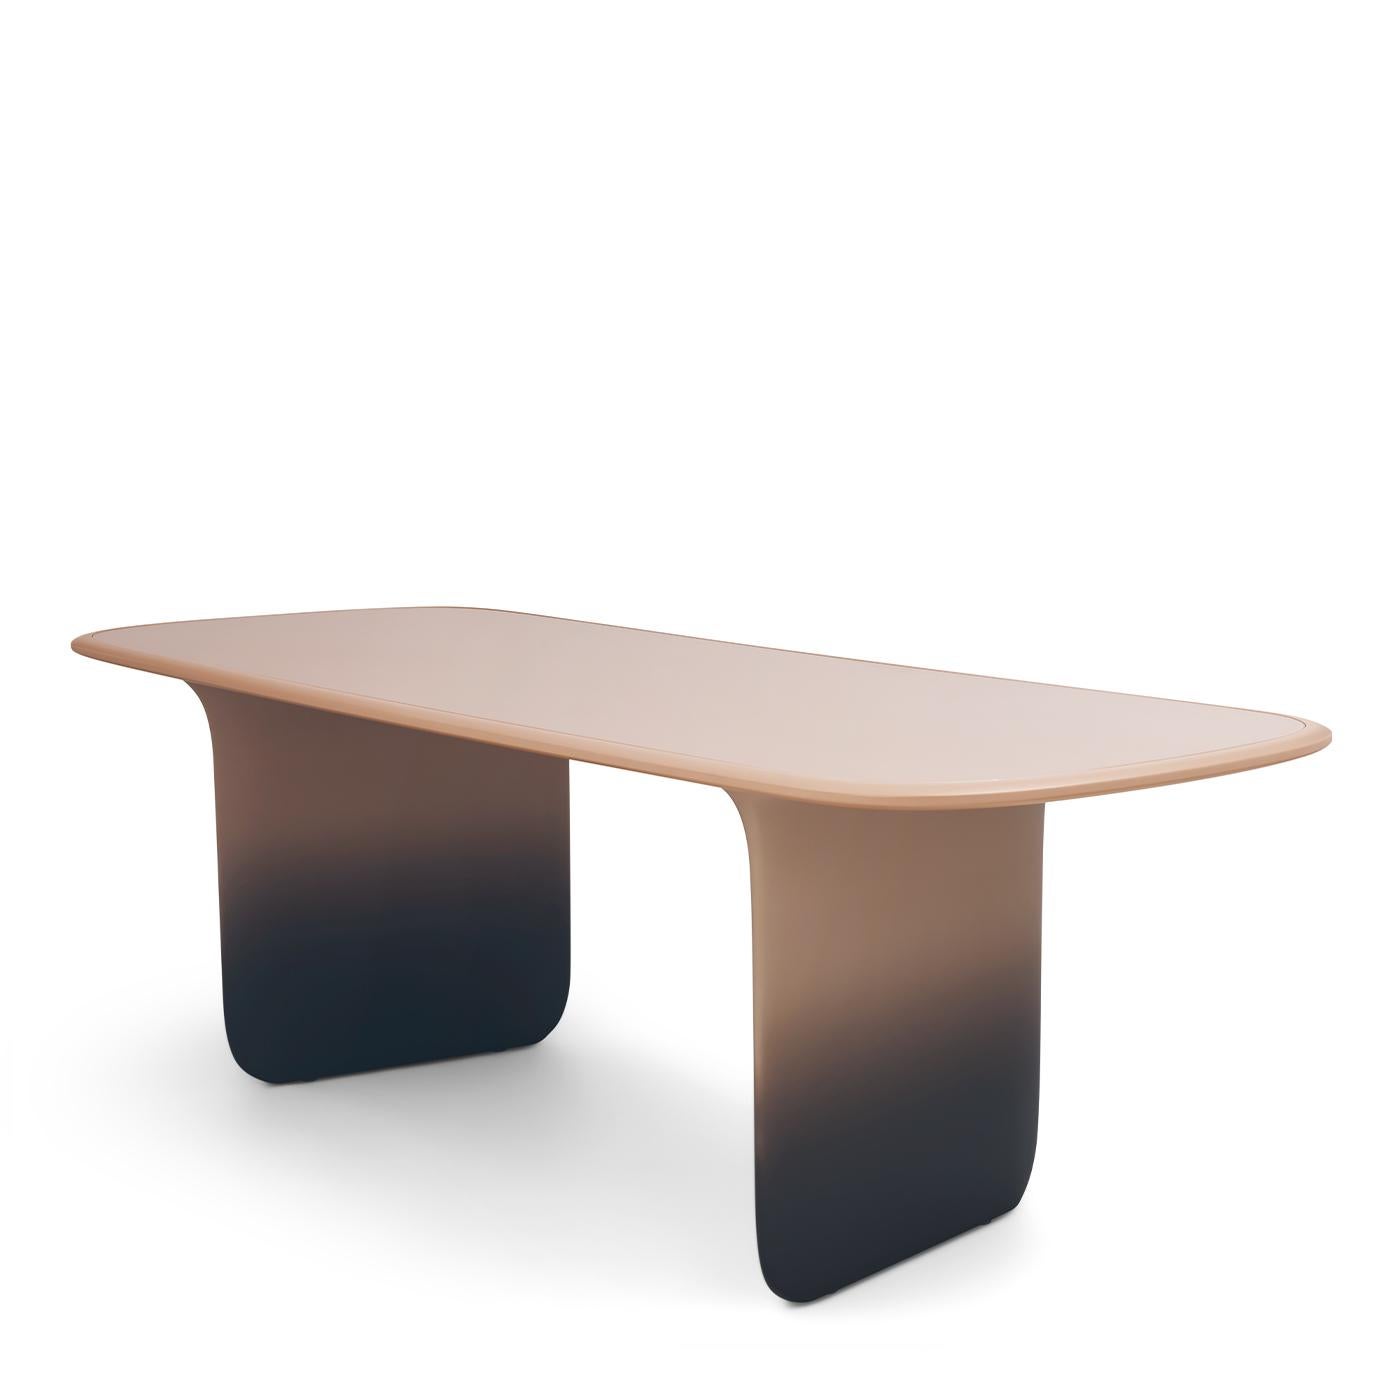 Die schattierte Lackierung verleiht den dünnen Tischbeinen eine auffallende geometrische Leichtigkeit und erweckt den Eindruck, als würde die Platte schweben.